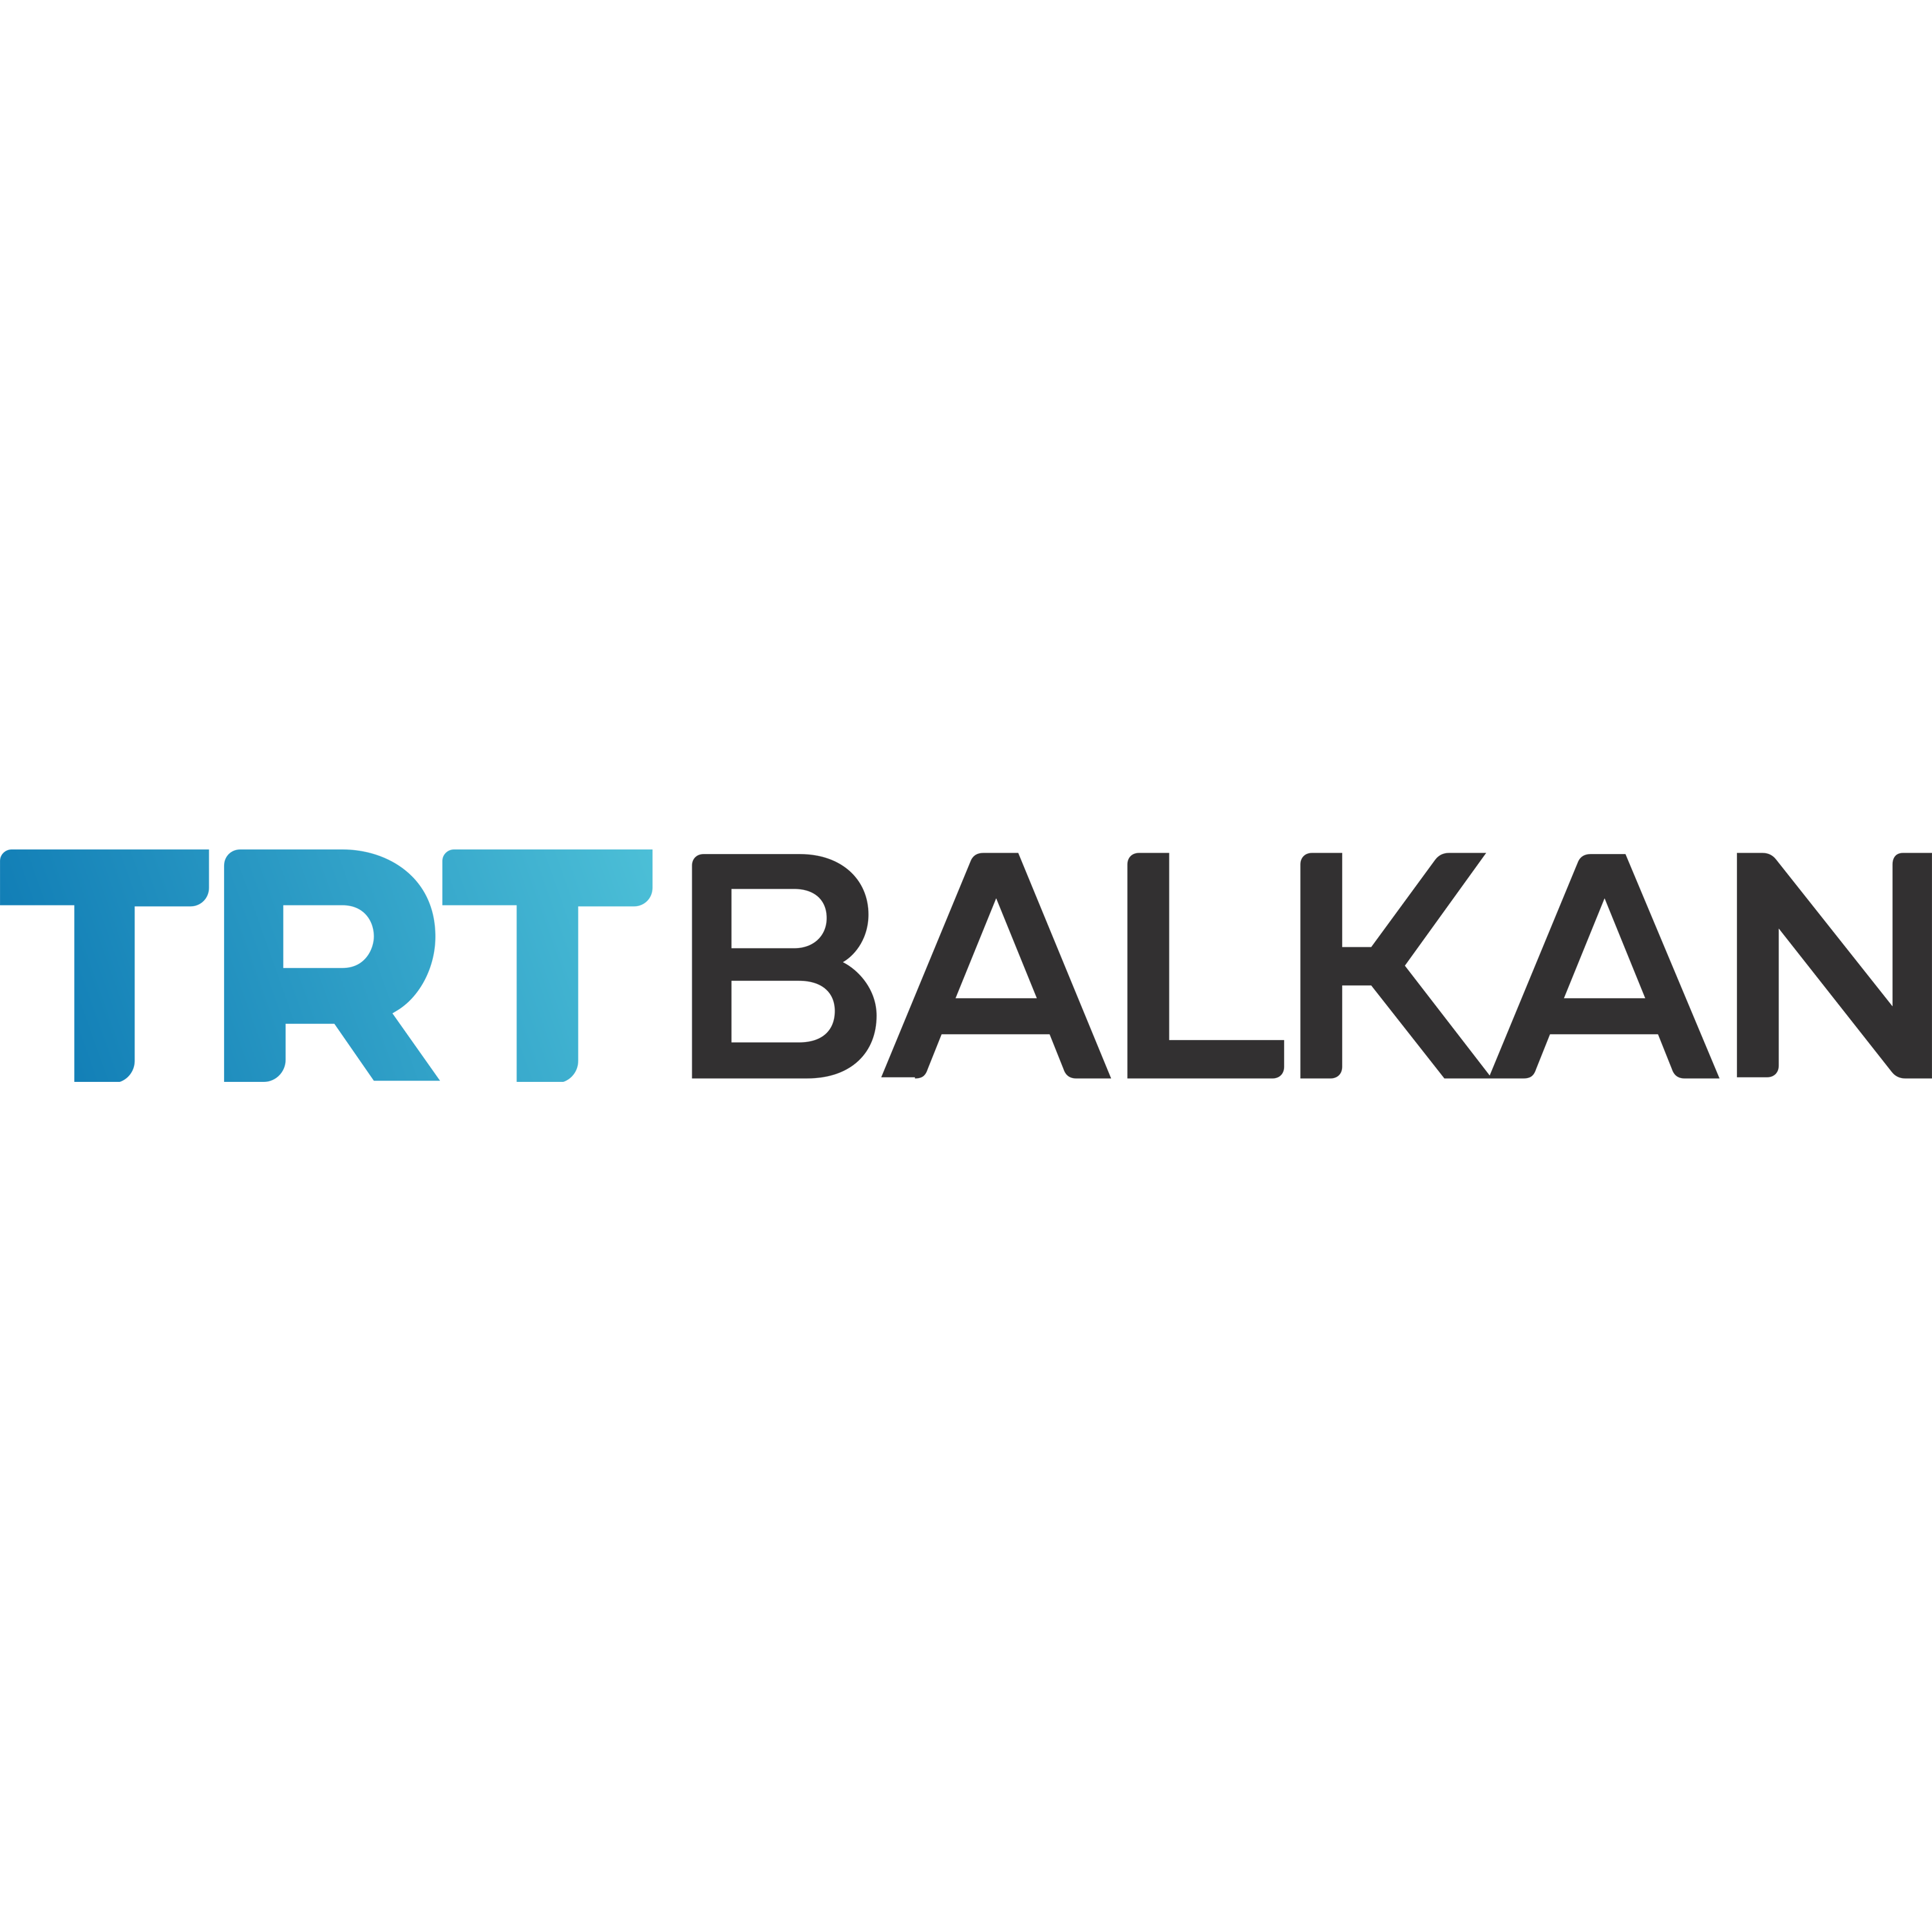 TRT Balkan Logo Transparent Image